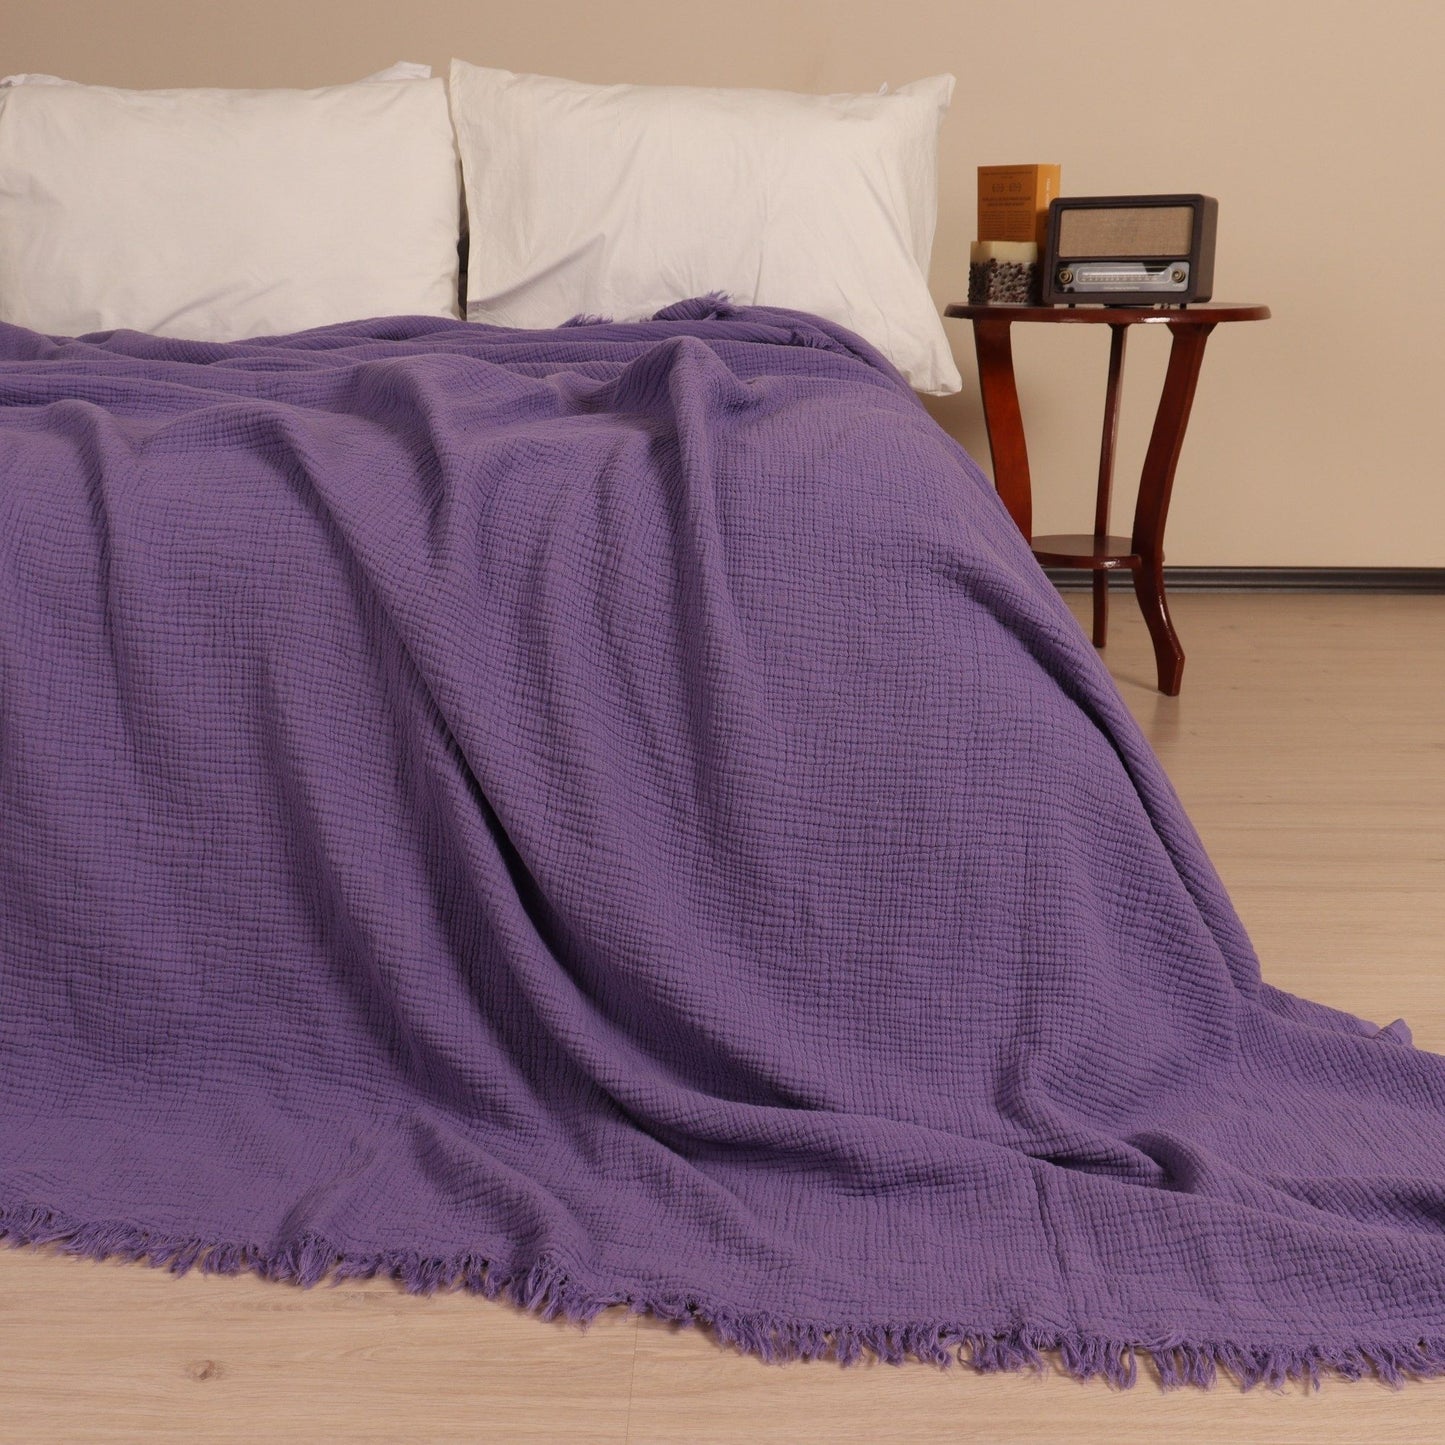 Adult Muslin Blankets purple 2